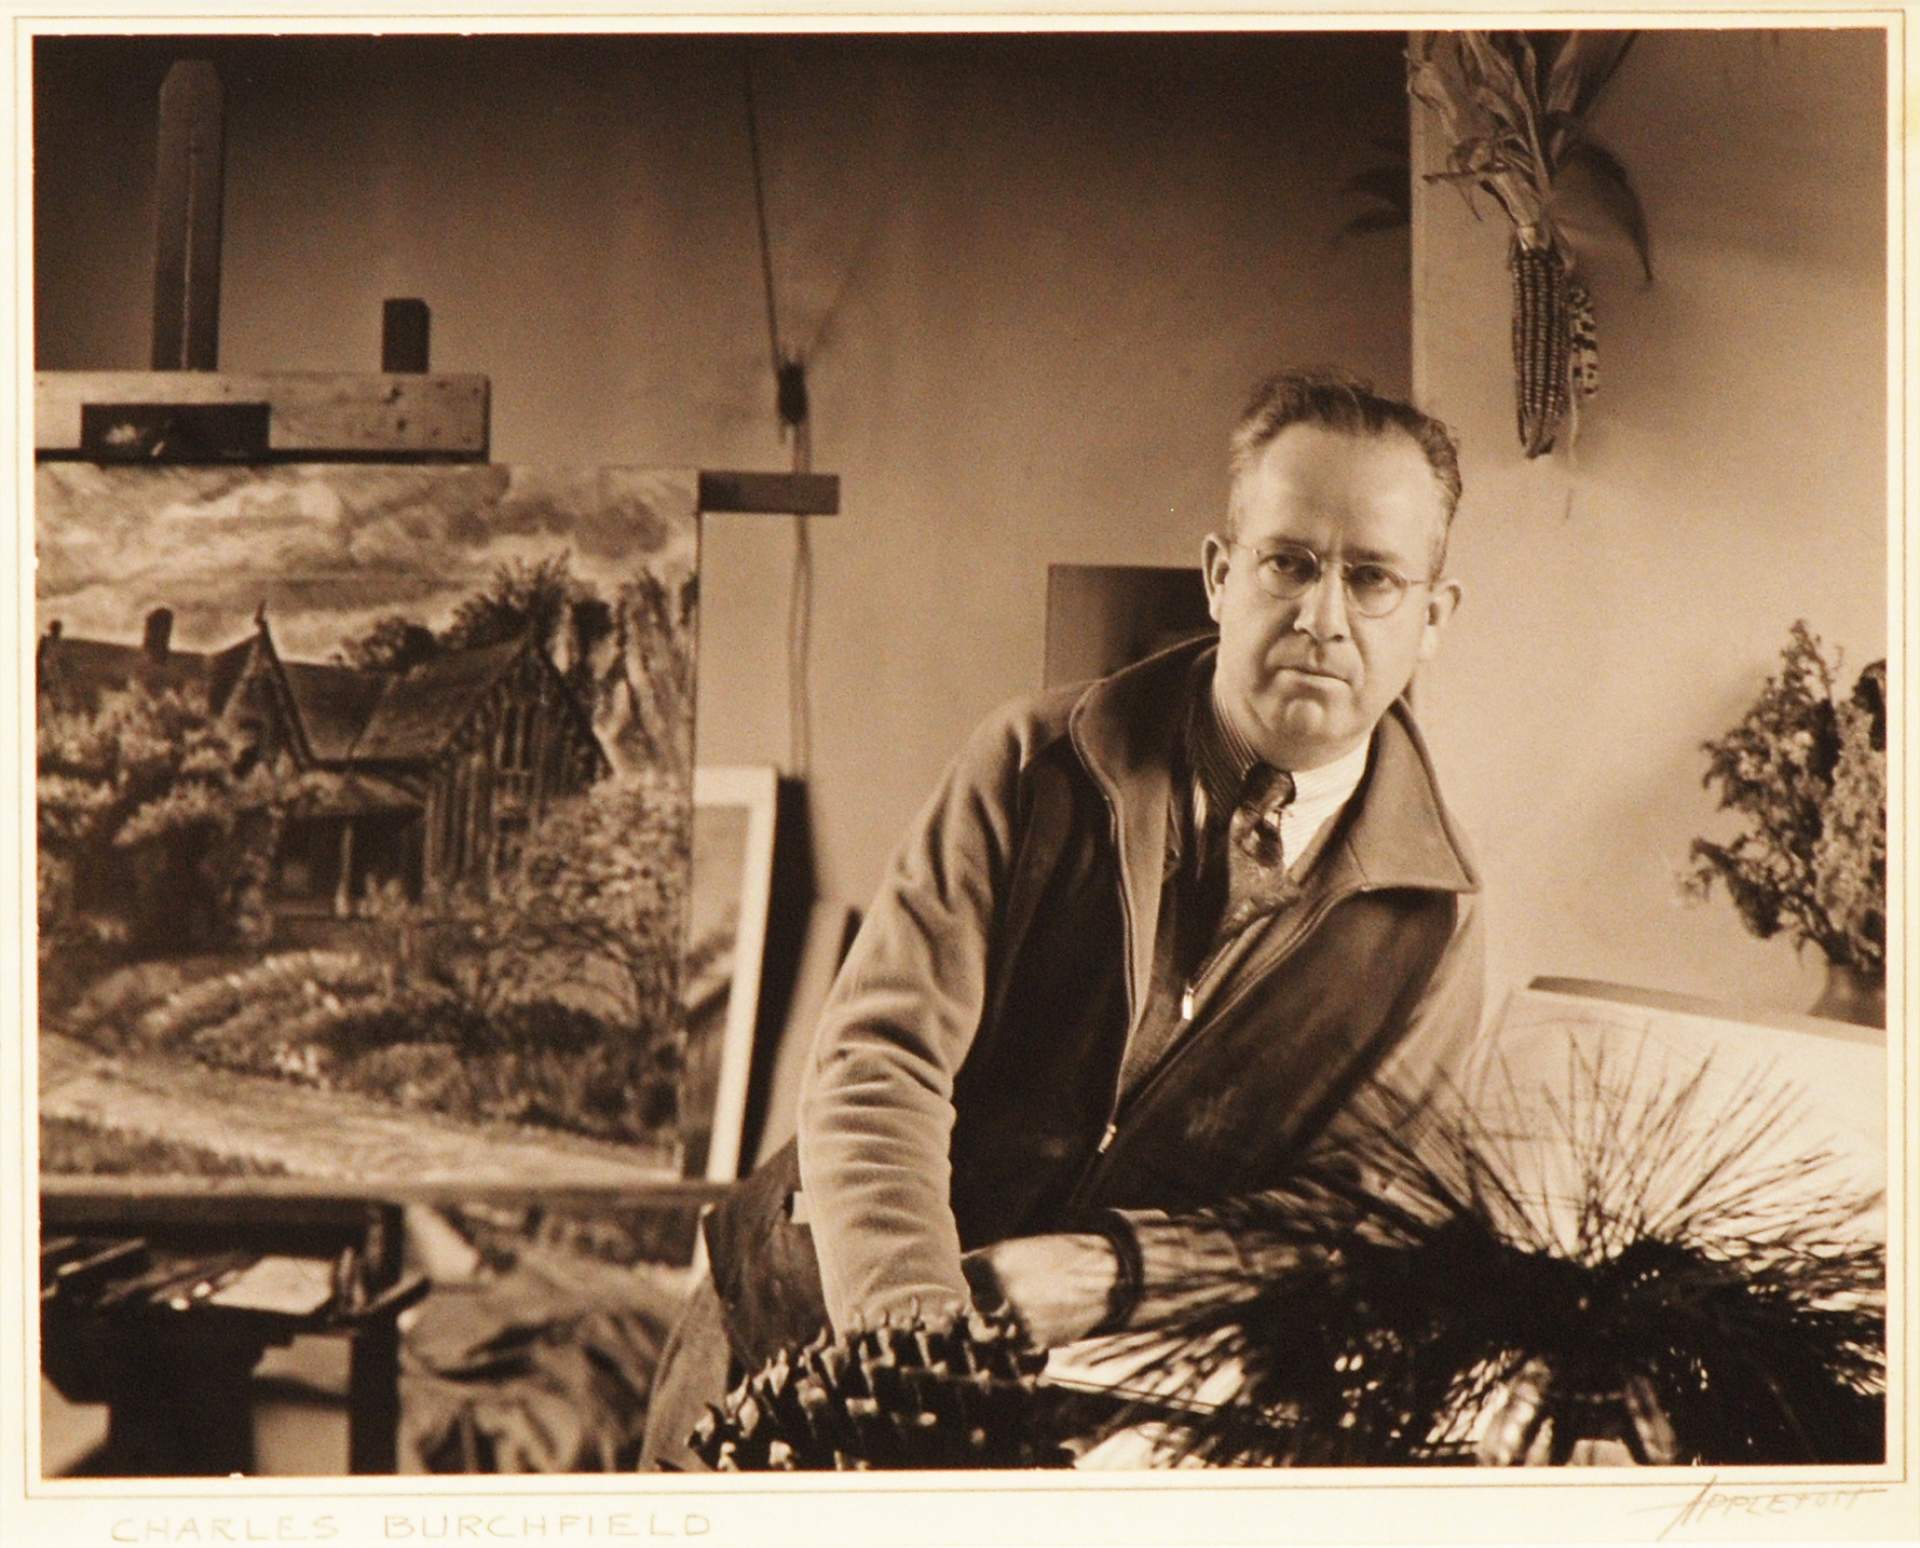 Portrait of Charles E. Burchfield in his Studio